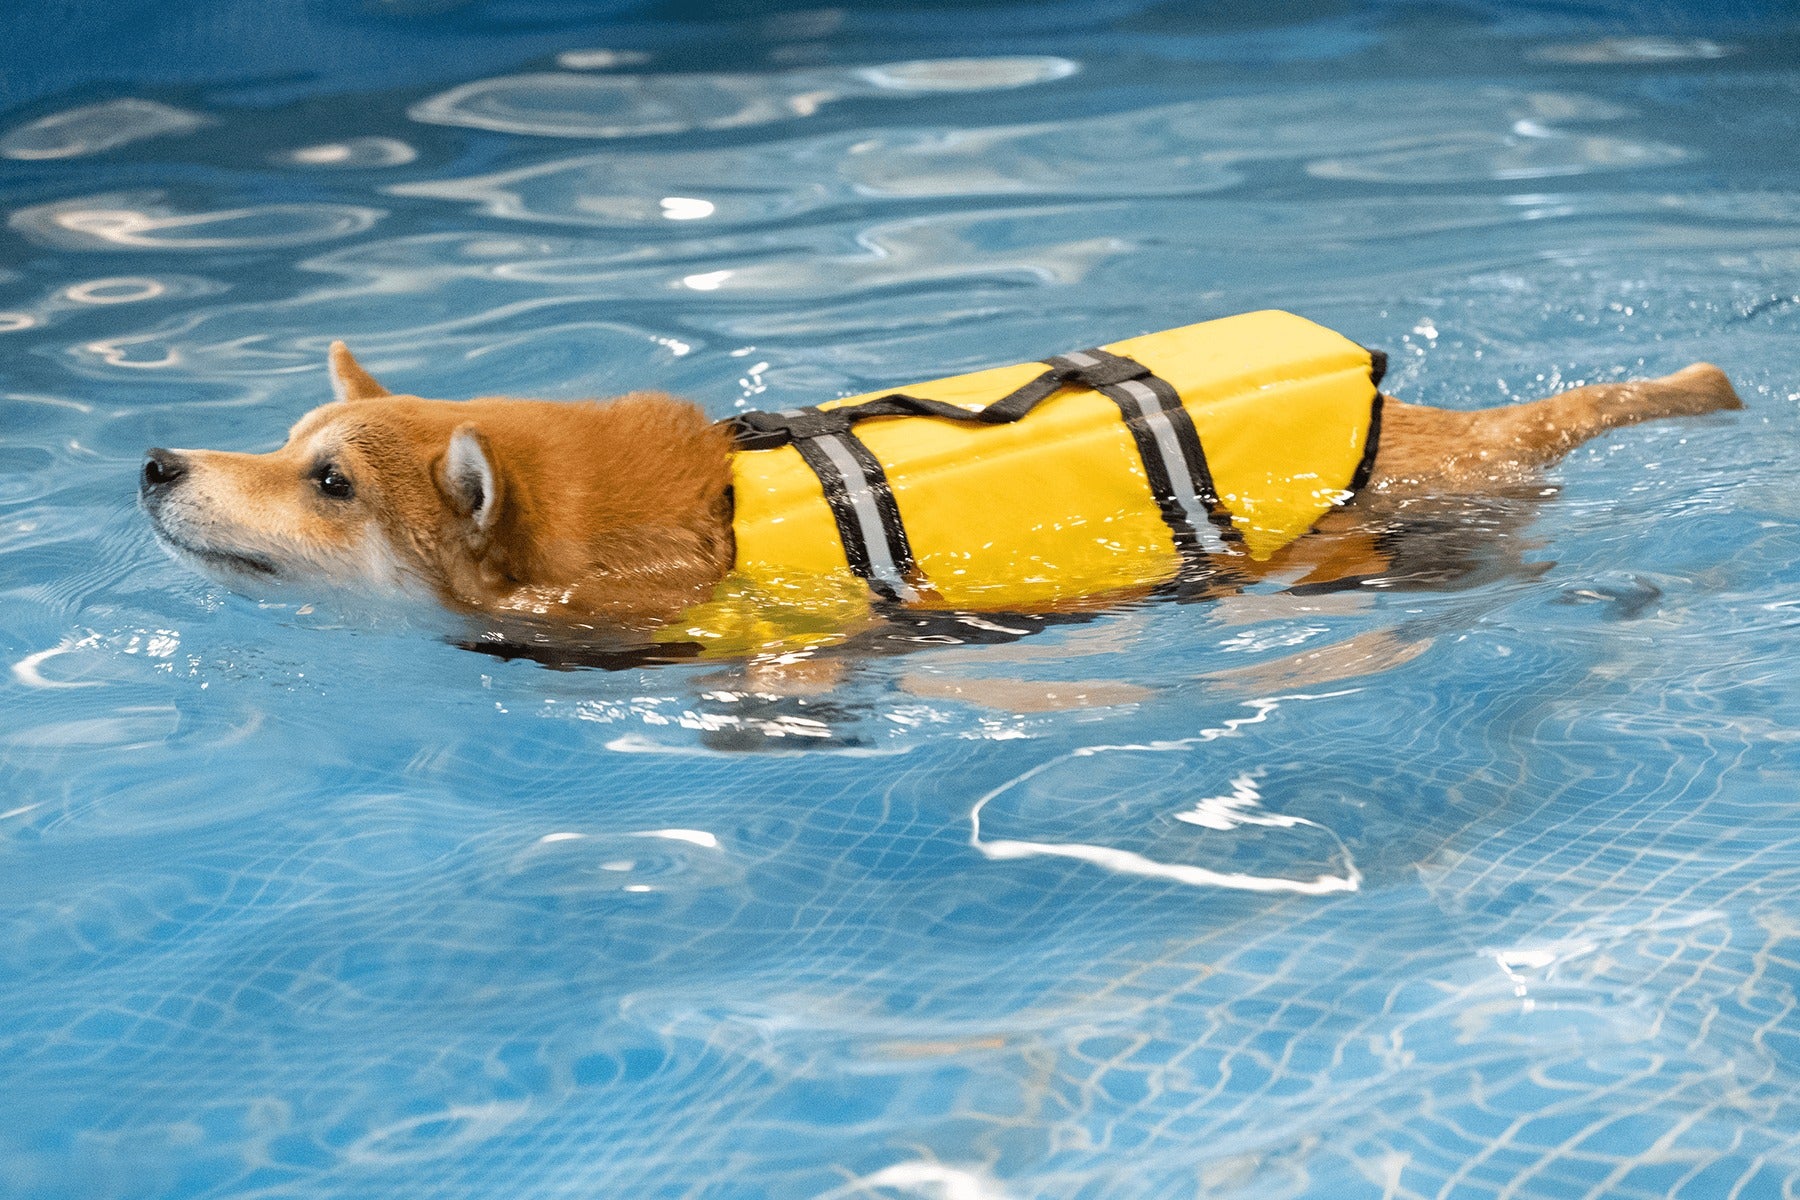 救生衣可以幫助狗狗保持平衡和浮力，也可以讓主人更容易抓住或拉起牠。